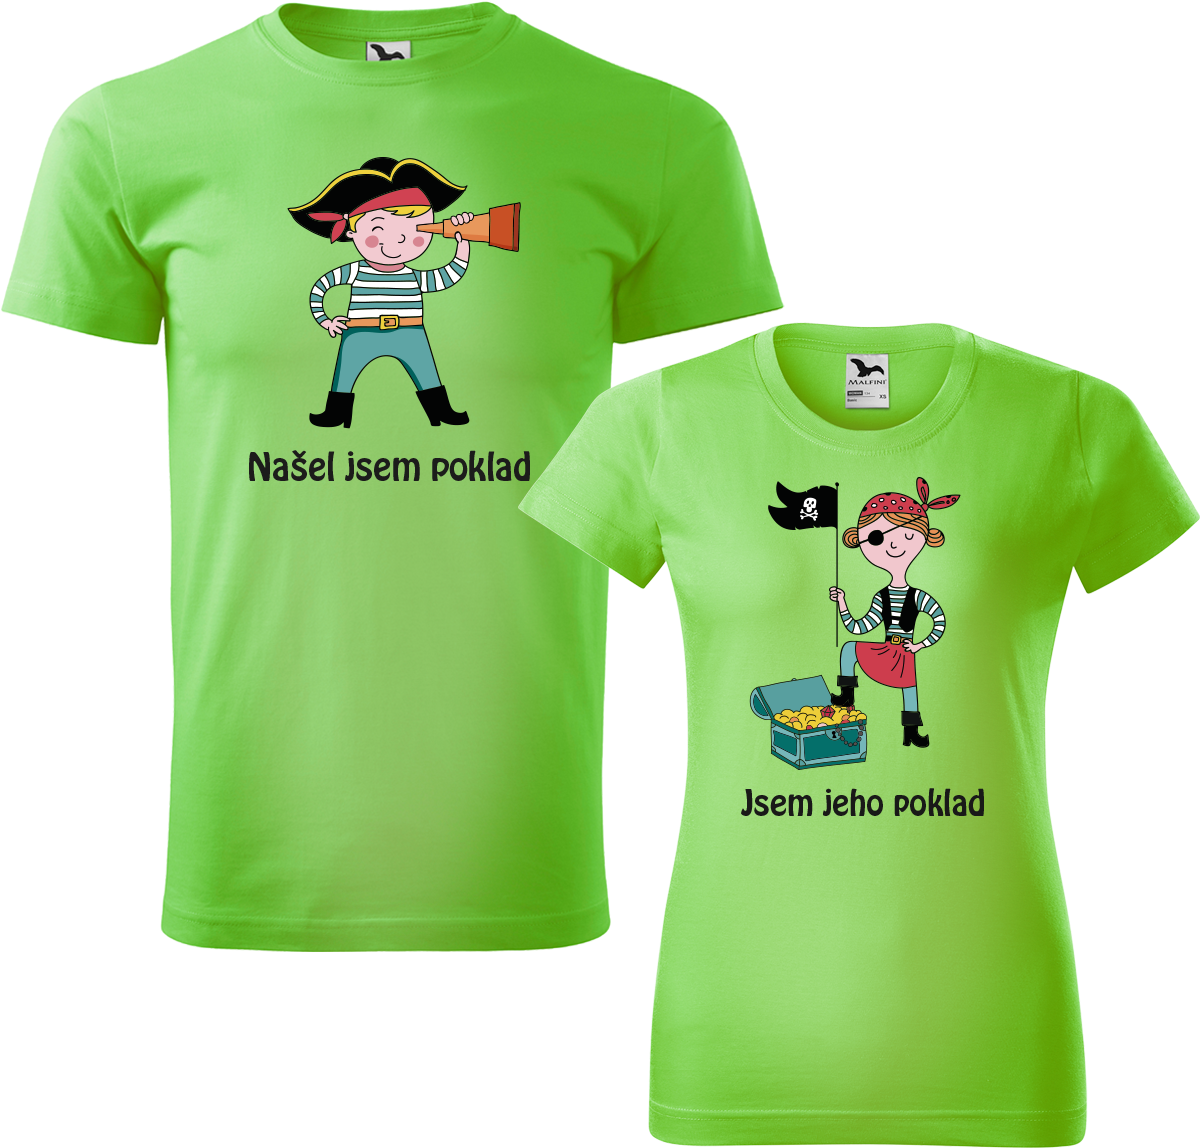 Trička pro páry - Poklad Barva: Apple Green (92), Velikost dámské tričko: S, Velikost pánské tričko: 4XL